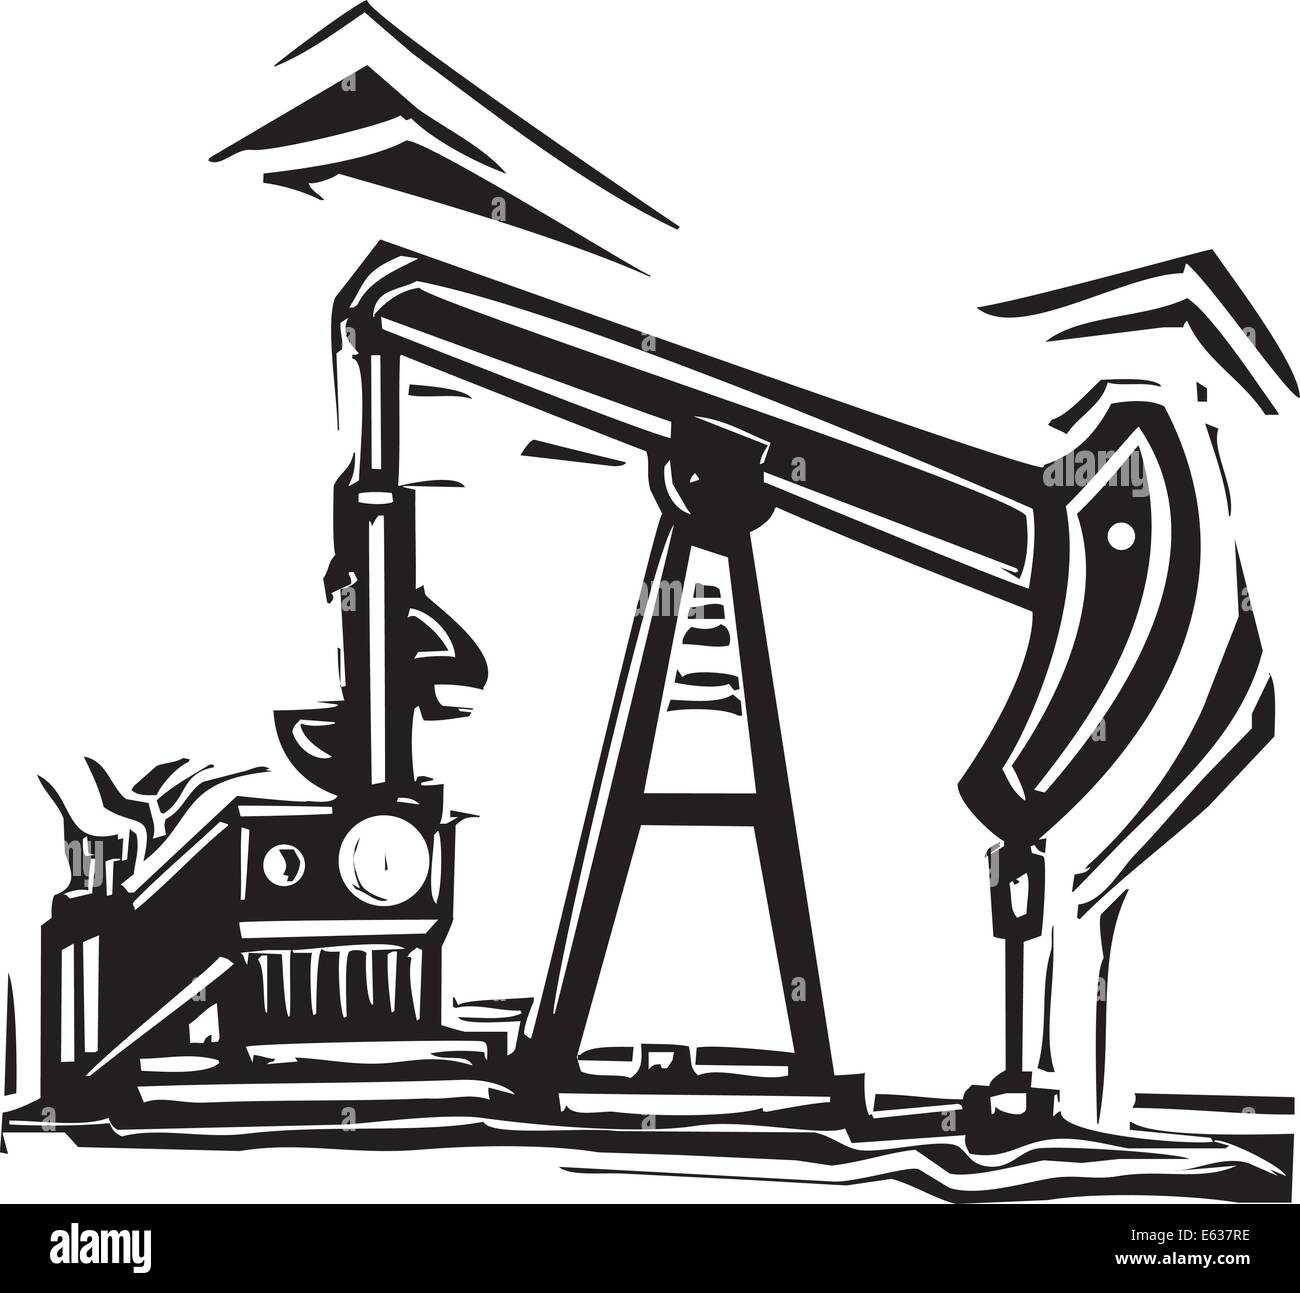 Image Style gravure sur bois d'un puits de pétrole à l'industrie pétrolière pumpjack pompant l'huile. Illustration de Vecteur